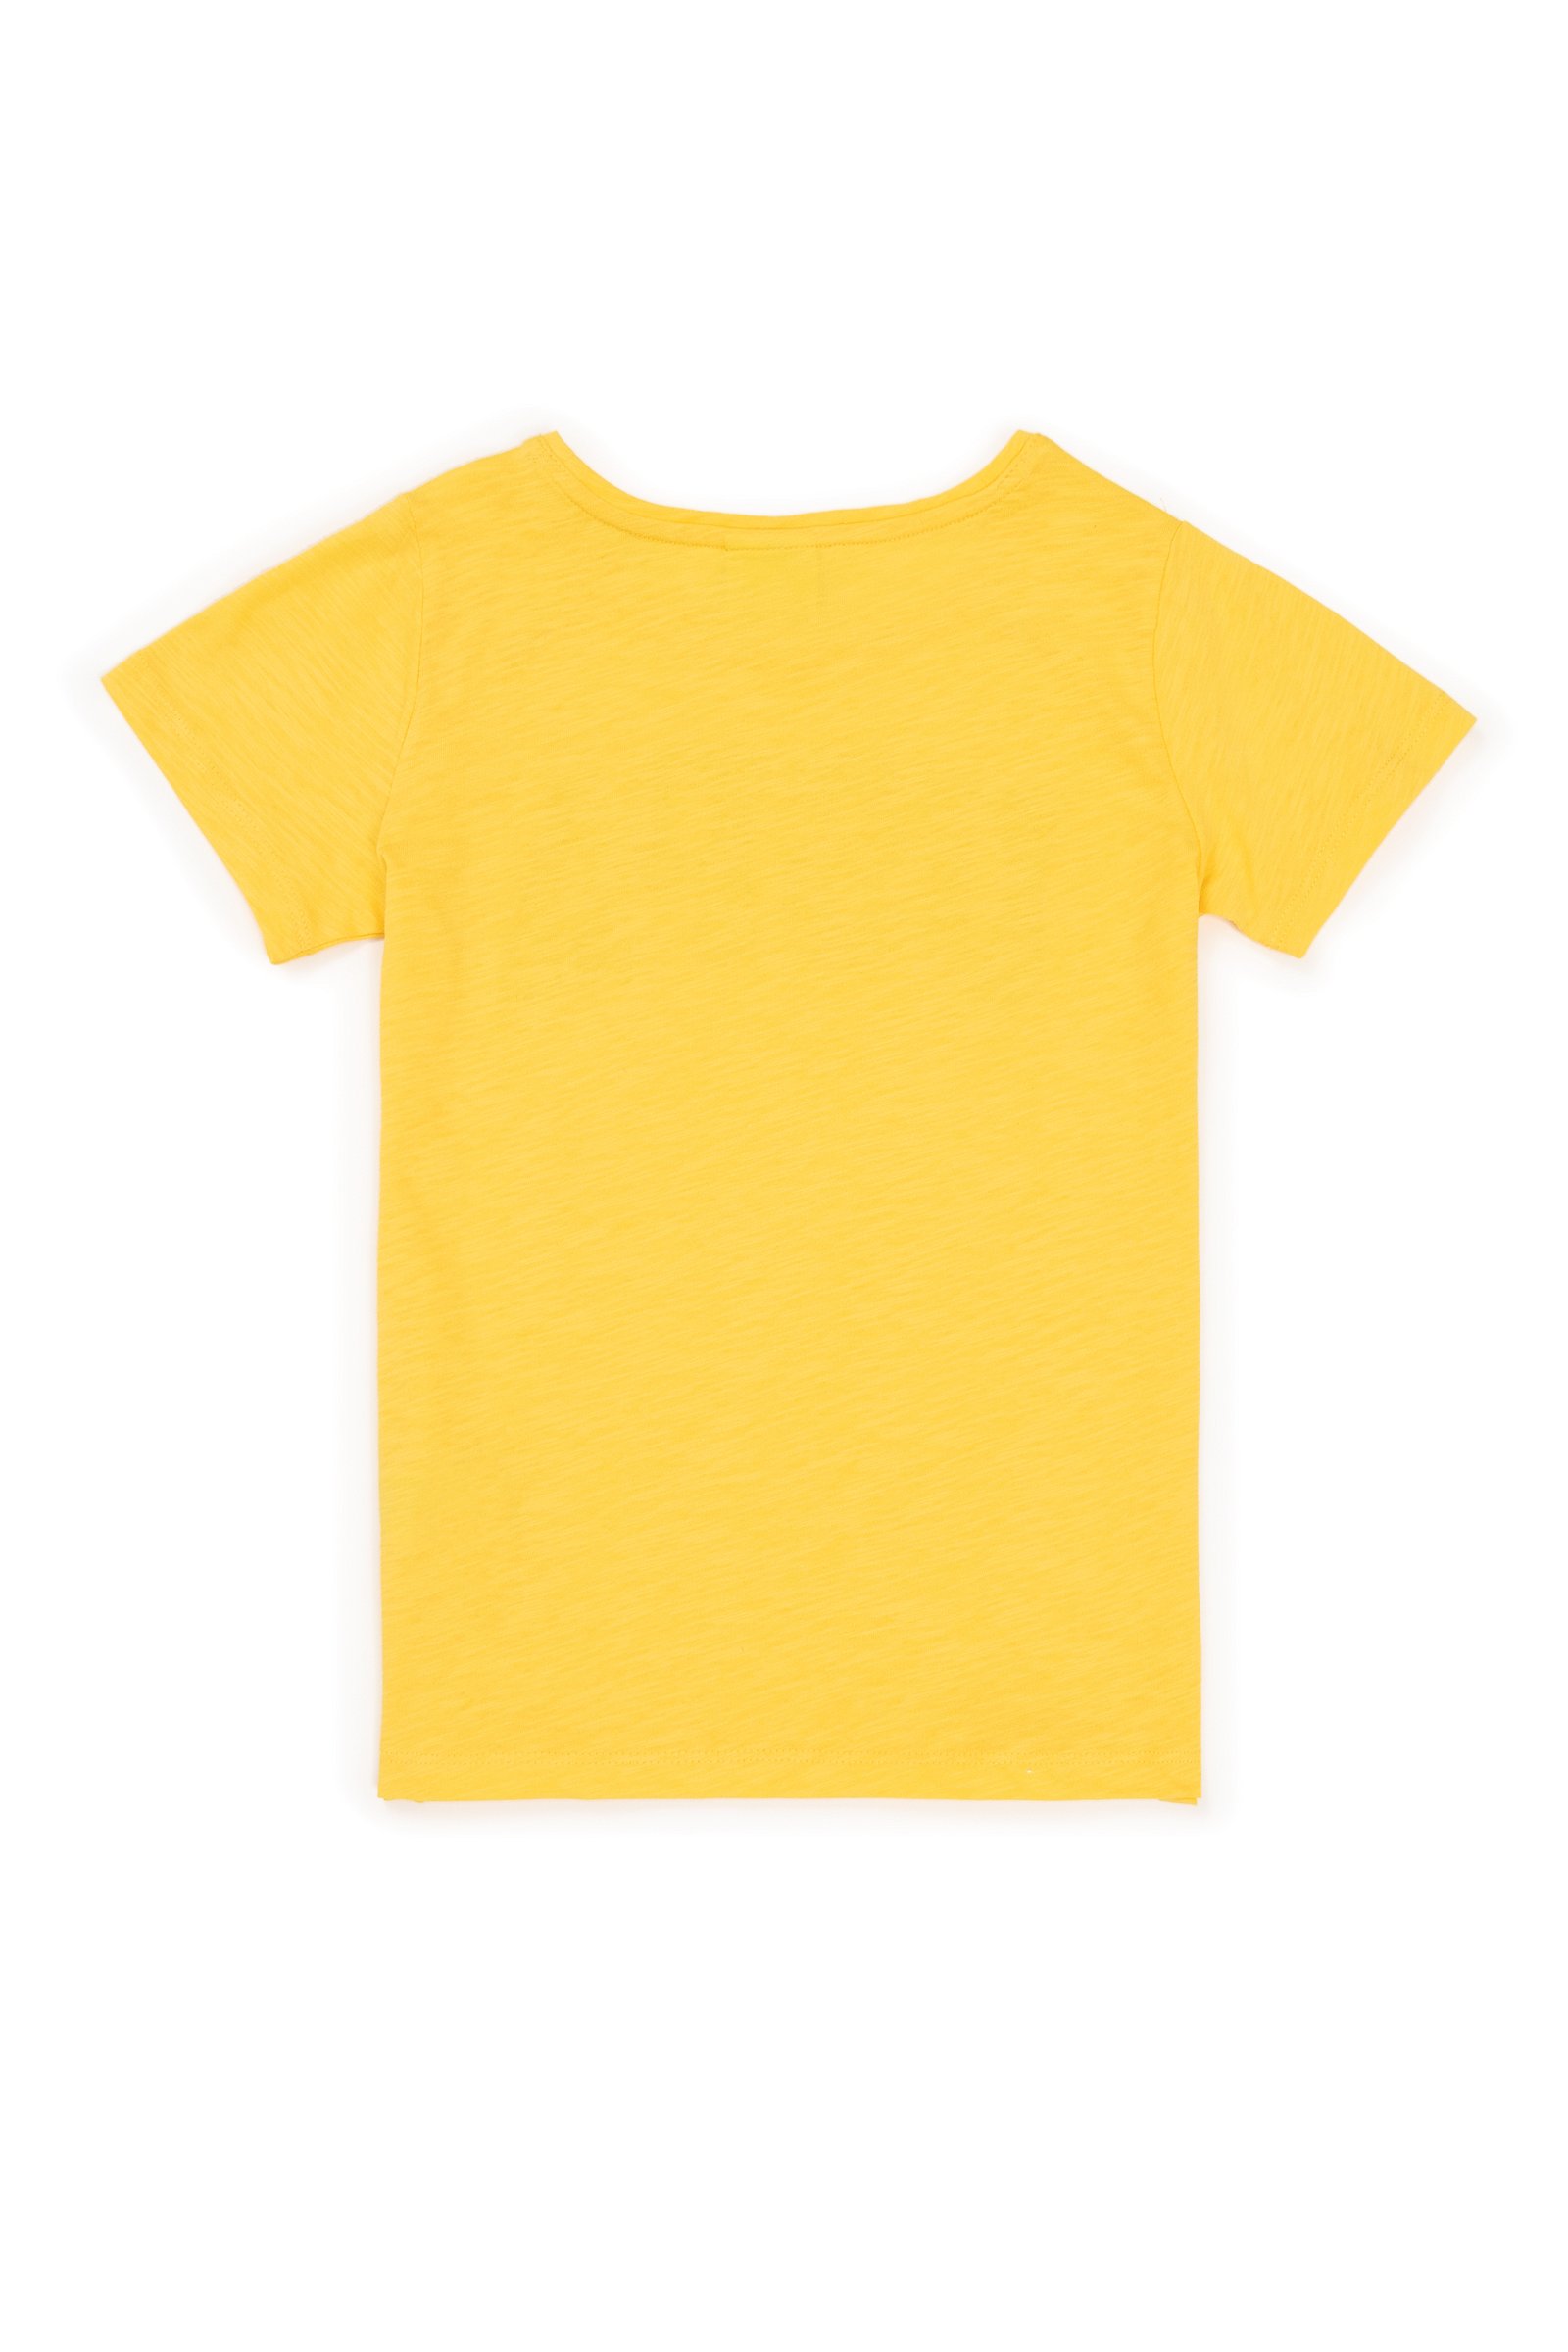 تی شرت  زرد روشن  استاندارد فیت  دخترانه یو اس پولو